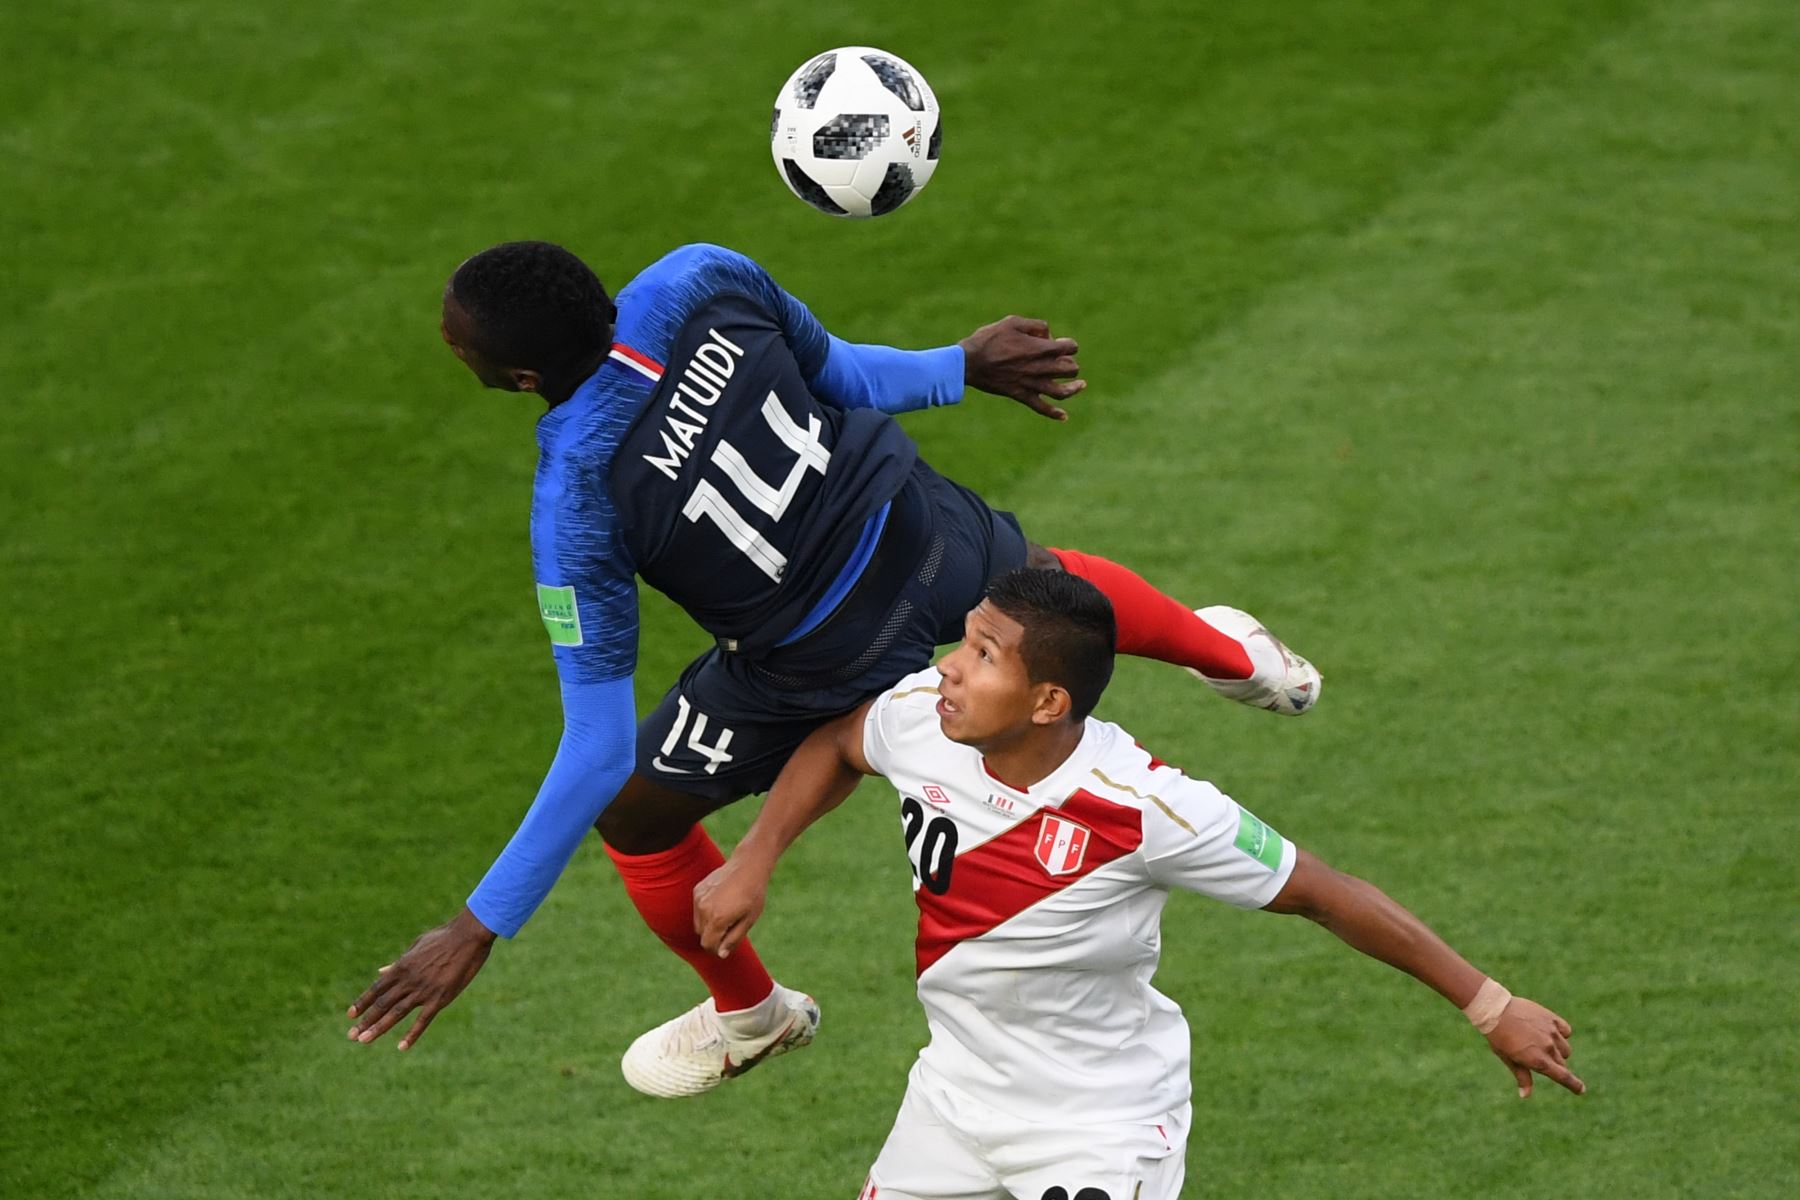 El centrocampista francés Blaise Matuidi (L) encabeza el balón por delante del centrocampista peruano Edison Flores durante el partido de fútbol del Grupo C de la Copa Mundial Rusia 2018 entre Francia y Perú en el Ekaterimburgo Arena .
 / AFP